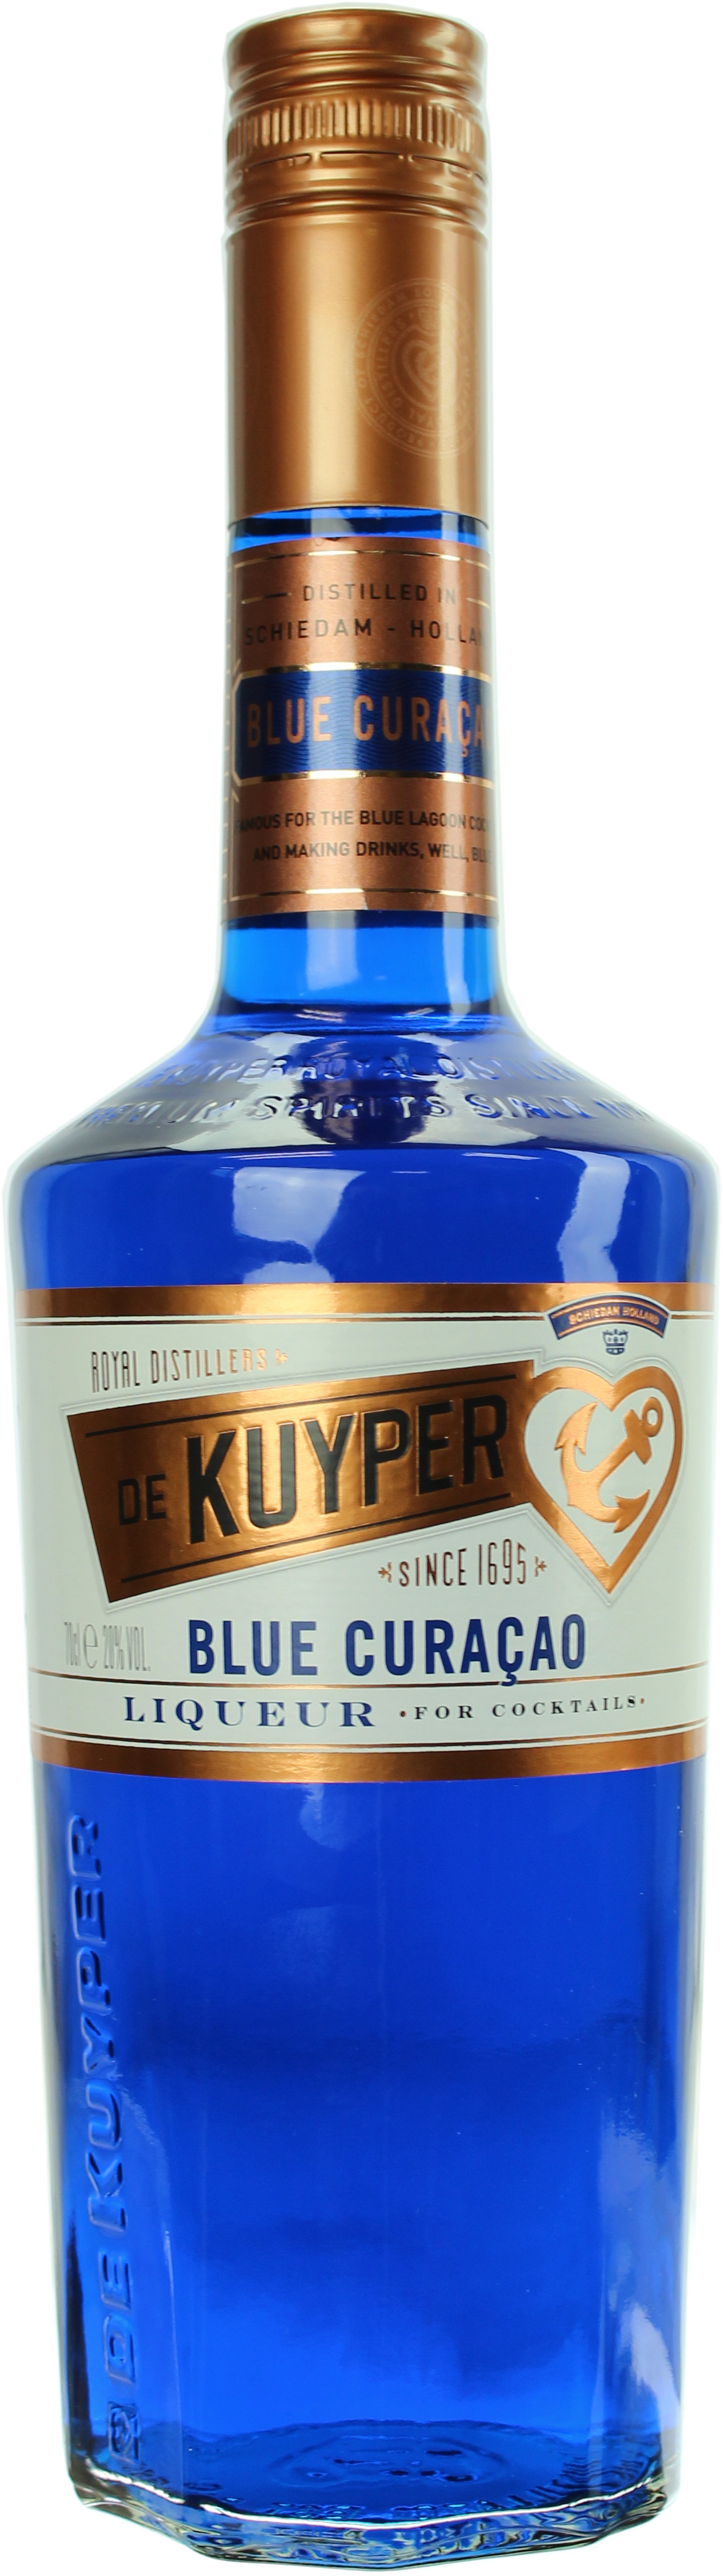 De Kuyper Blue Curacao Liqueur 20.0% 0,7l